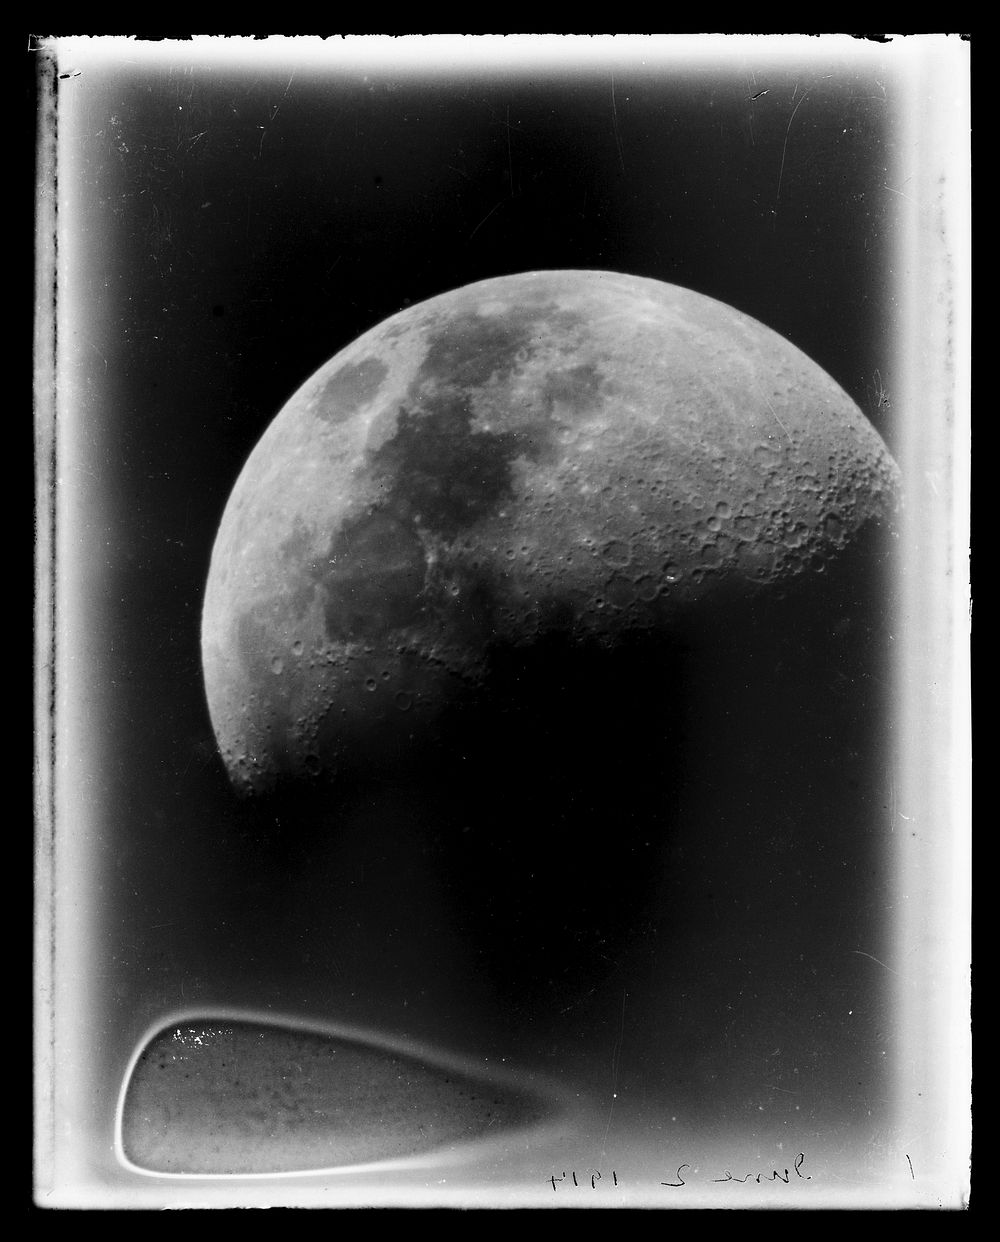 Half moon (02 June 1914).